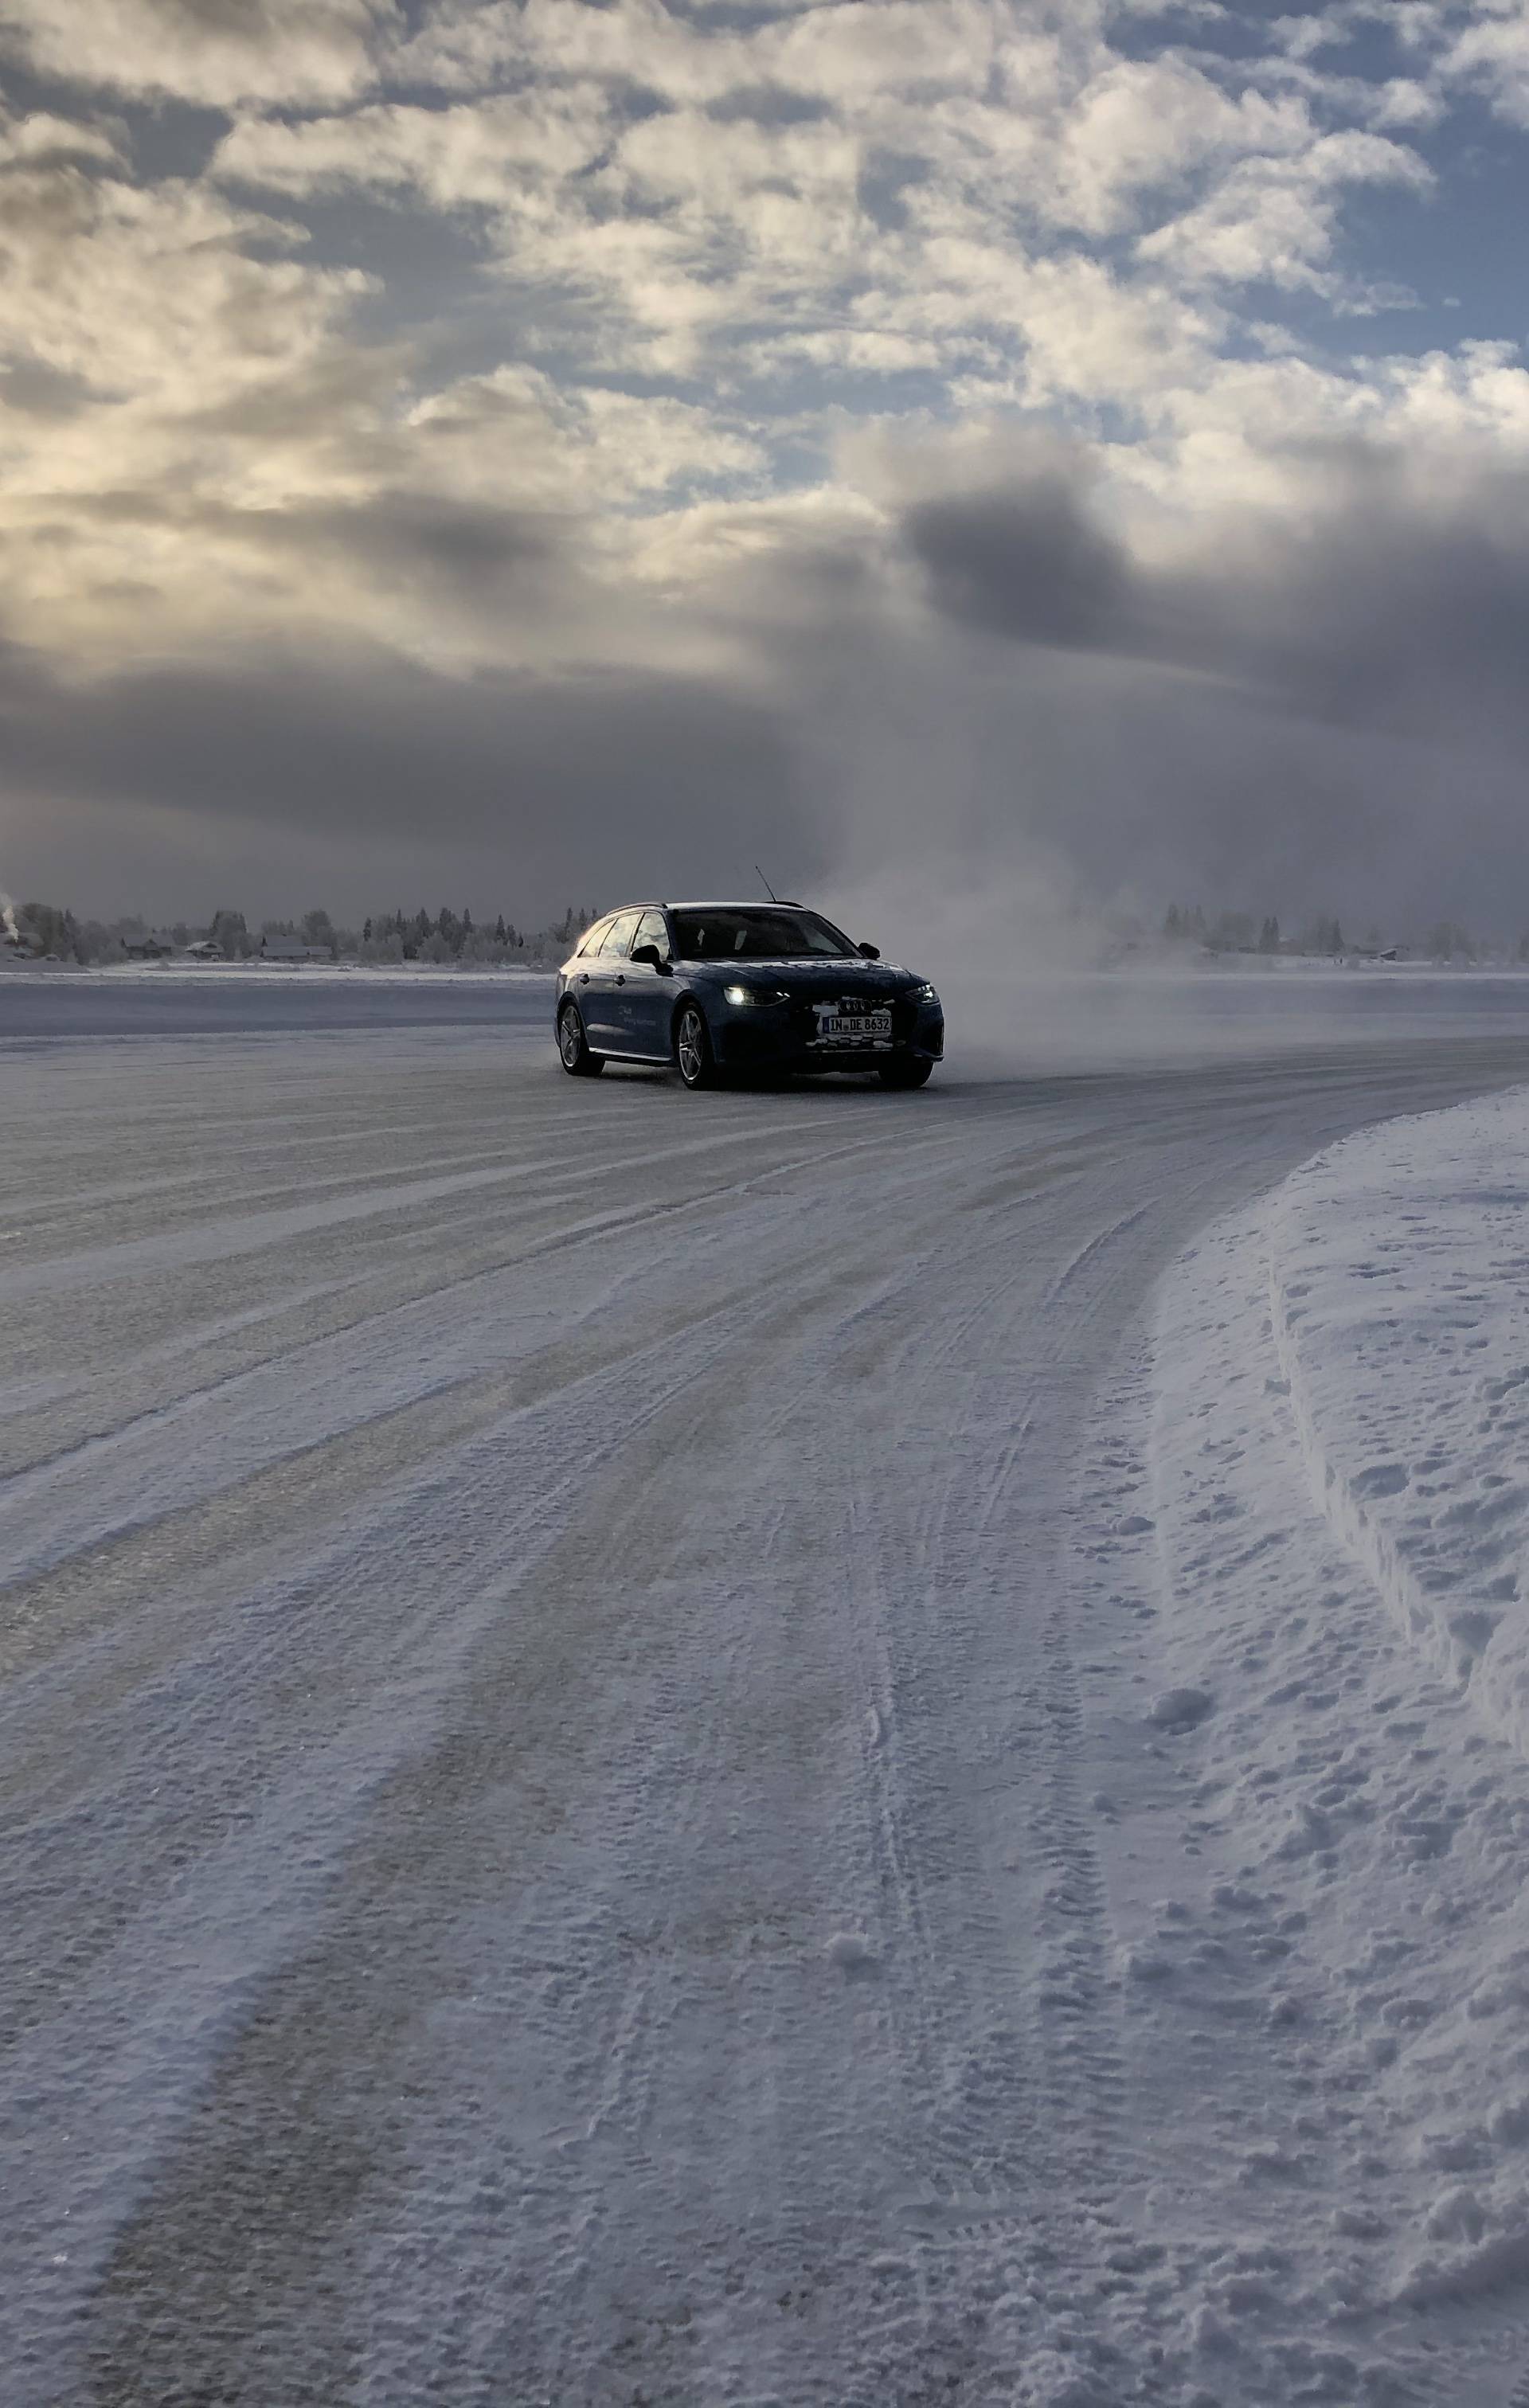 Na minus 33 stupnja u Finskoj jurili smo 100 km/h po ledu!